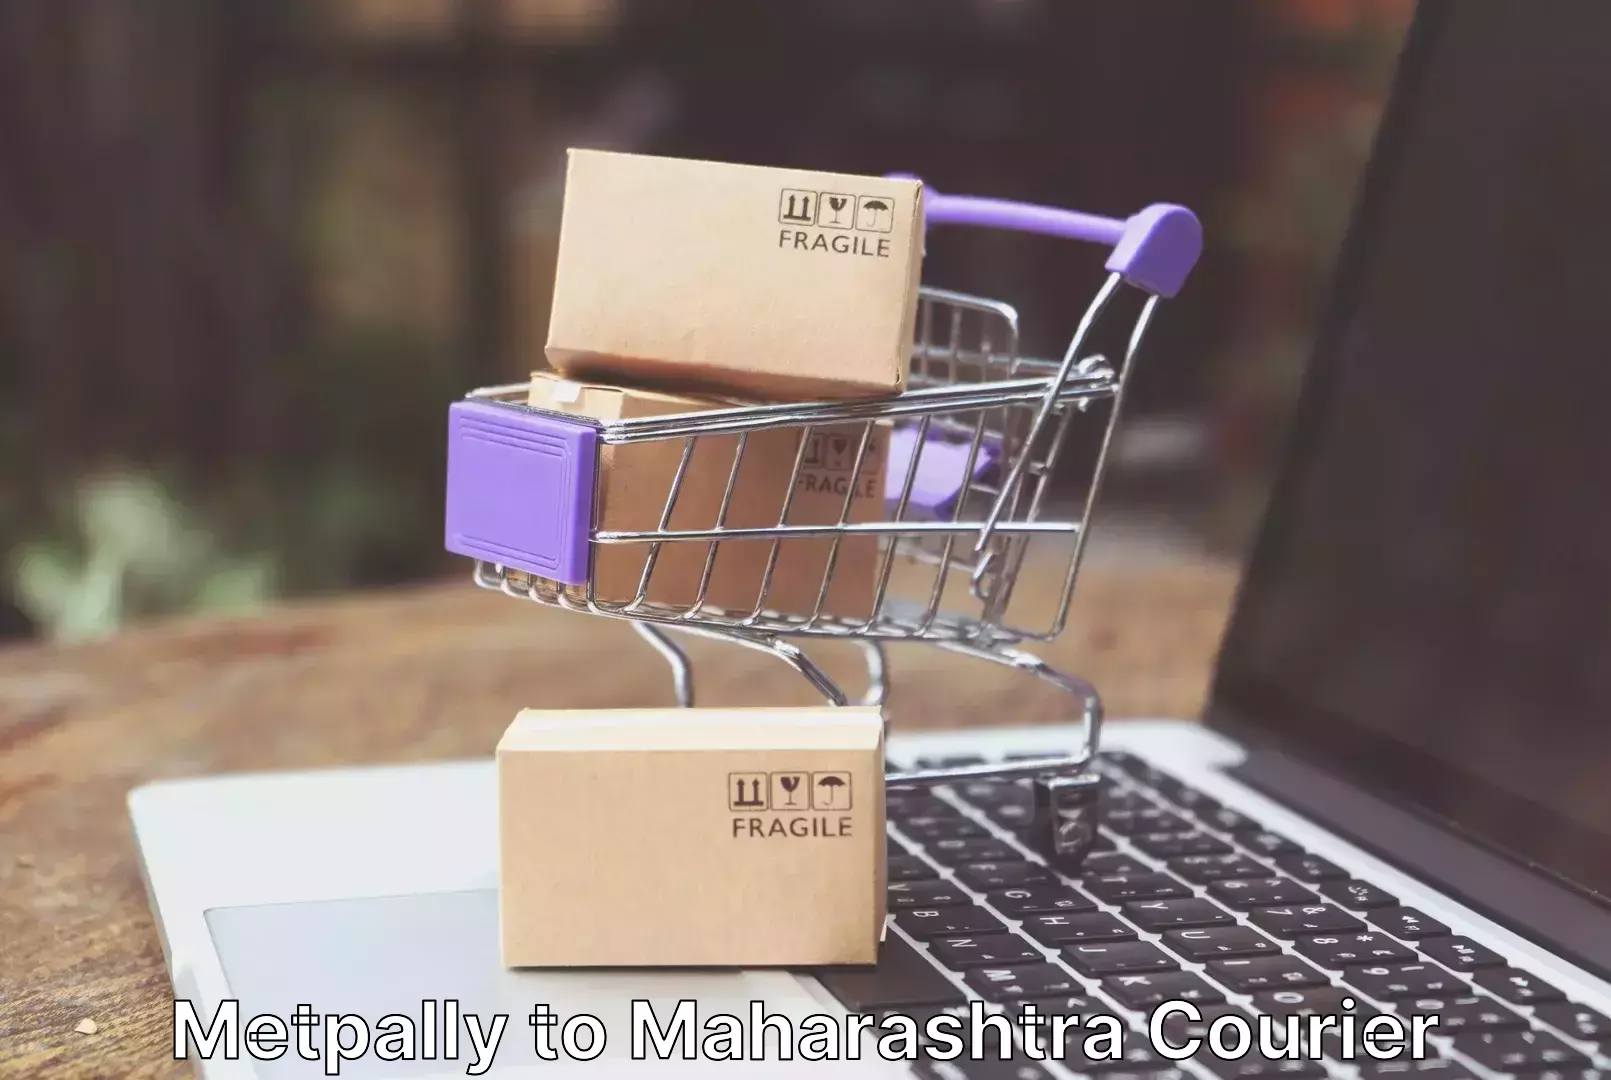 Efficient moving company Metpally to Maharashtra